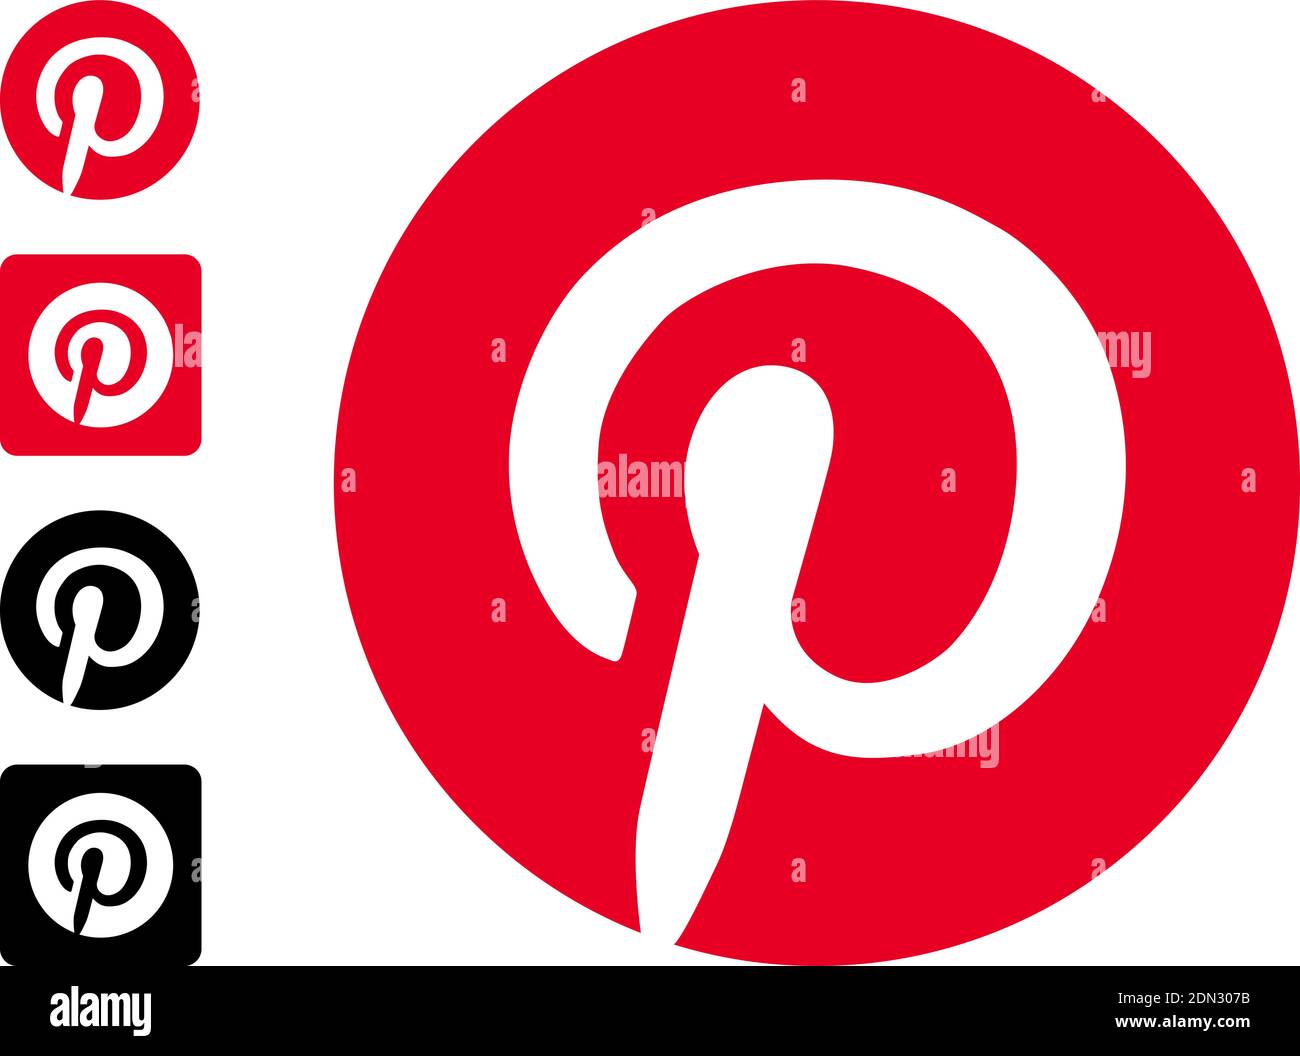 Pinterest editorial logo set. Vector illustration on white background Stock Vector